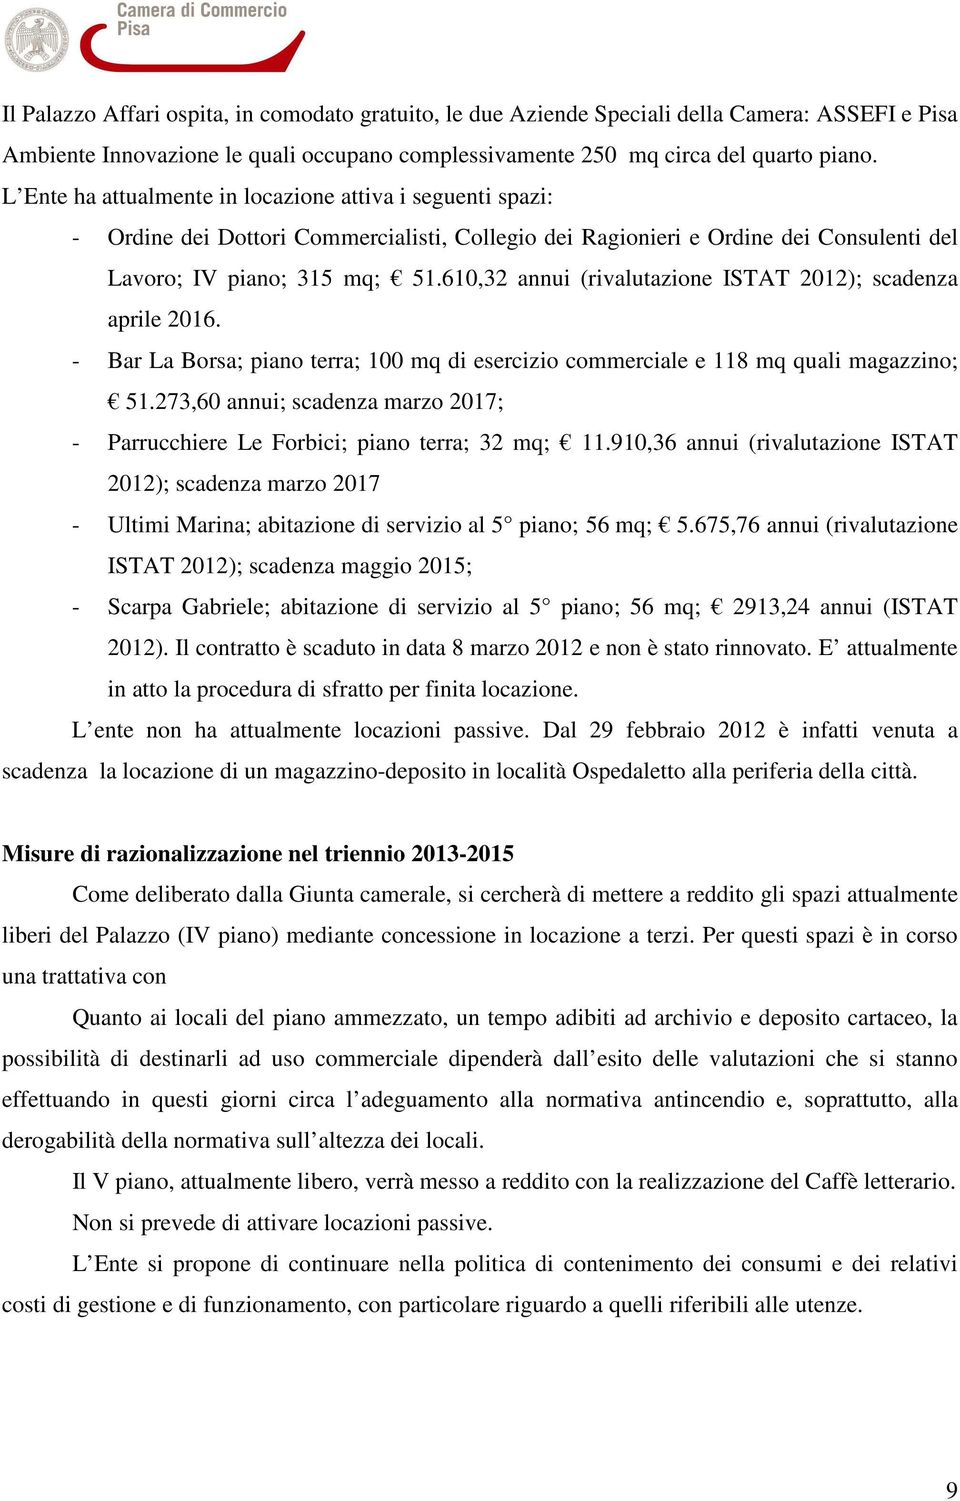 610,32 annui (rivalutazione ISTAT 2012); scadenza aprile 2016. - Bar La Borsa; piano terra; 100 mq di esercizio commerciale e 118 mq quali magazzino; 51.